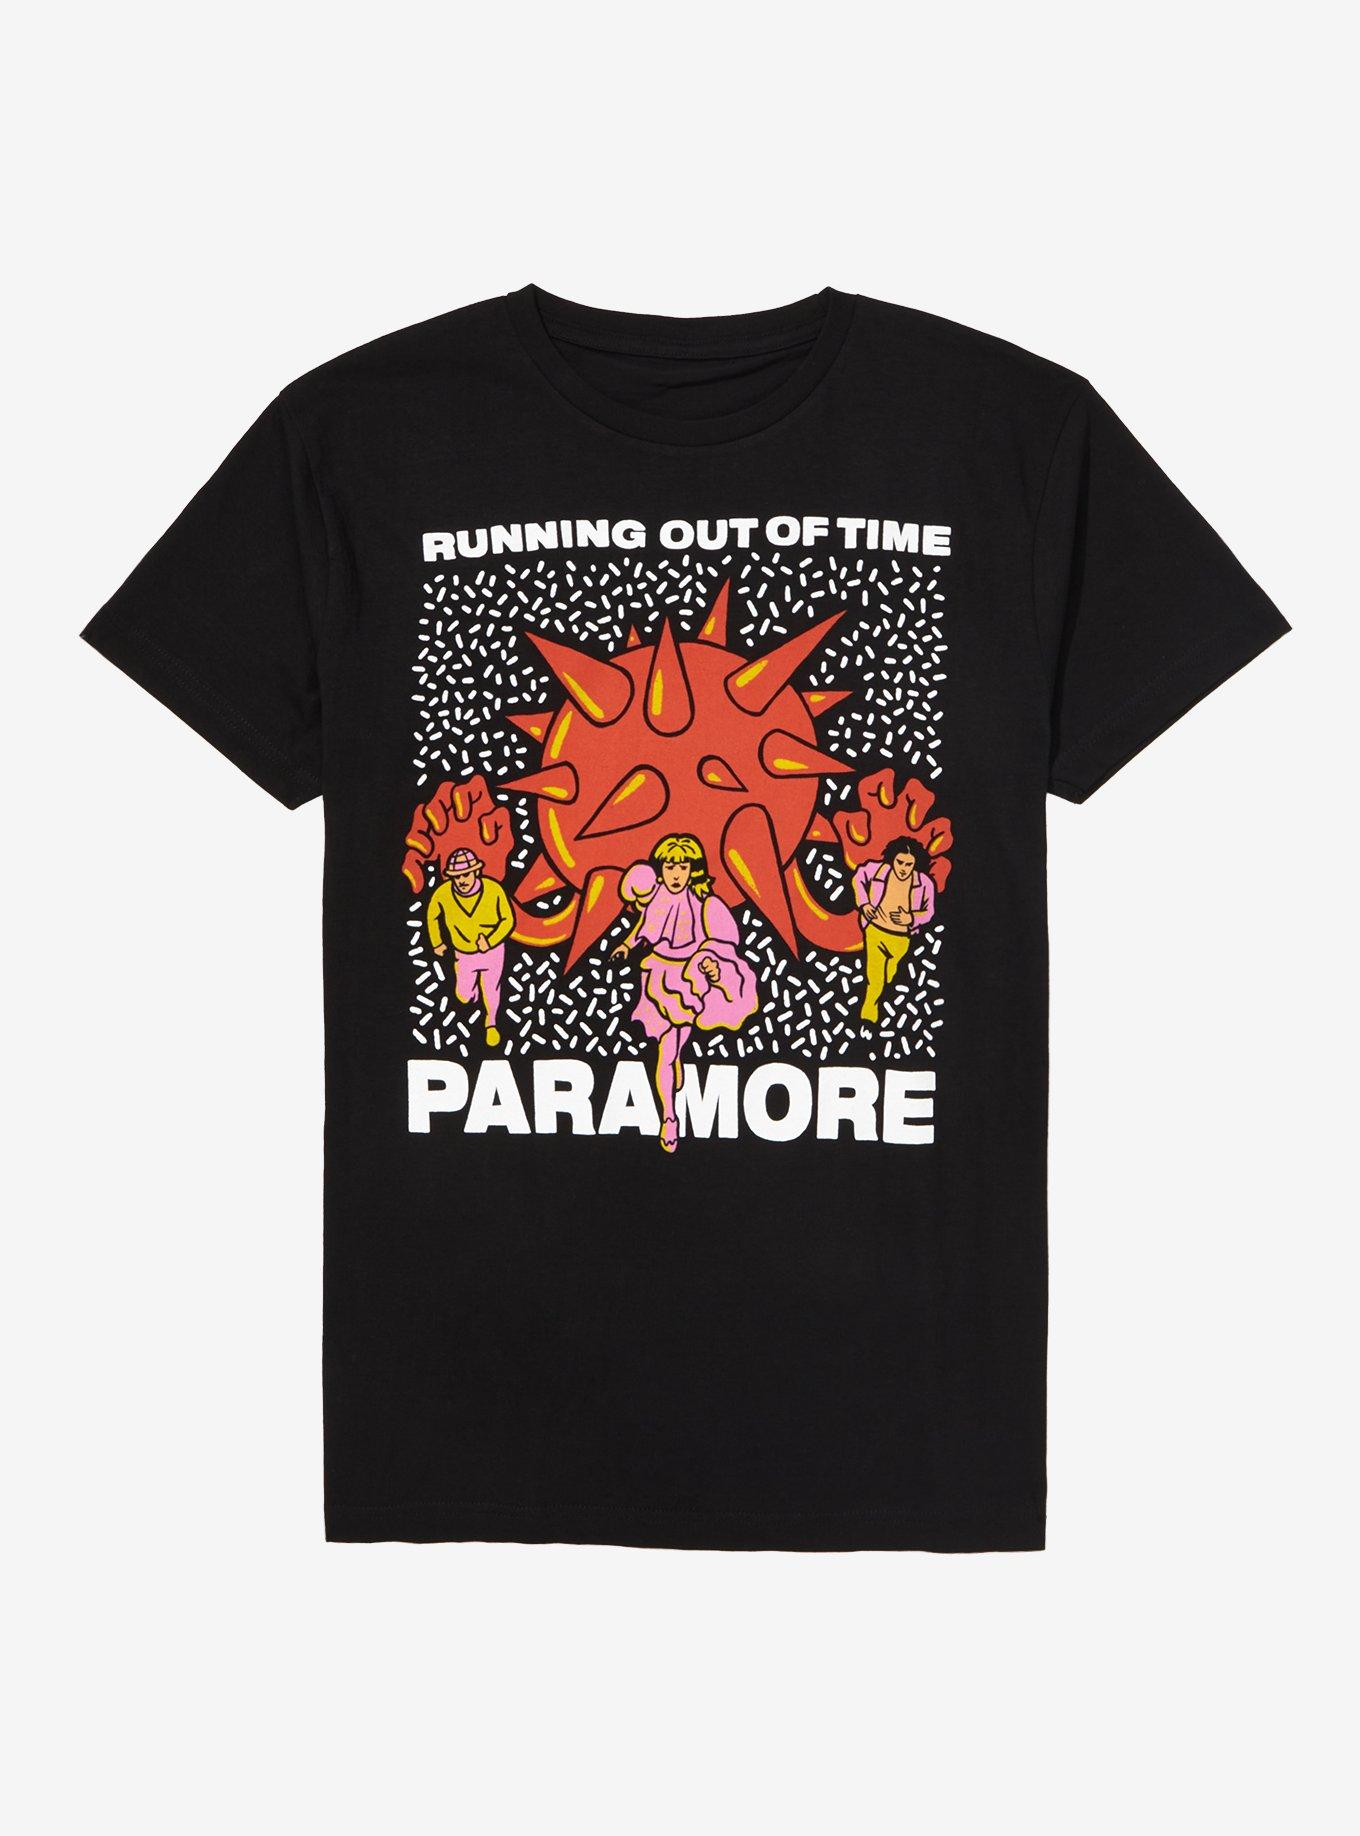 Paramore shirt 